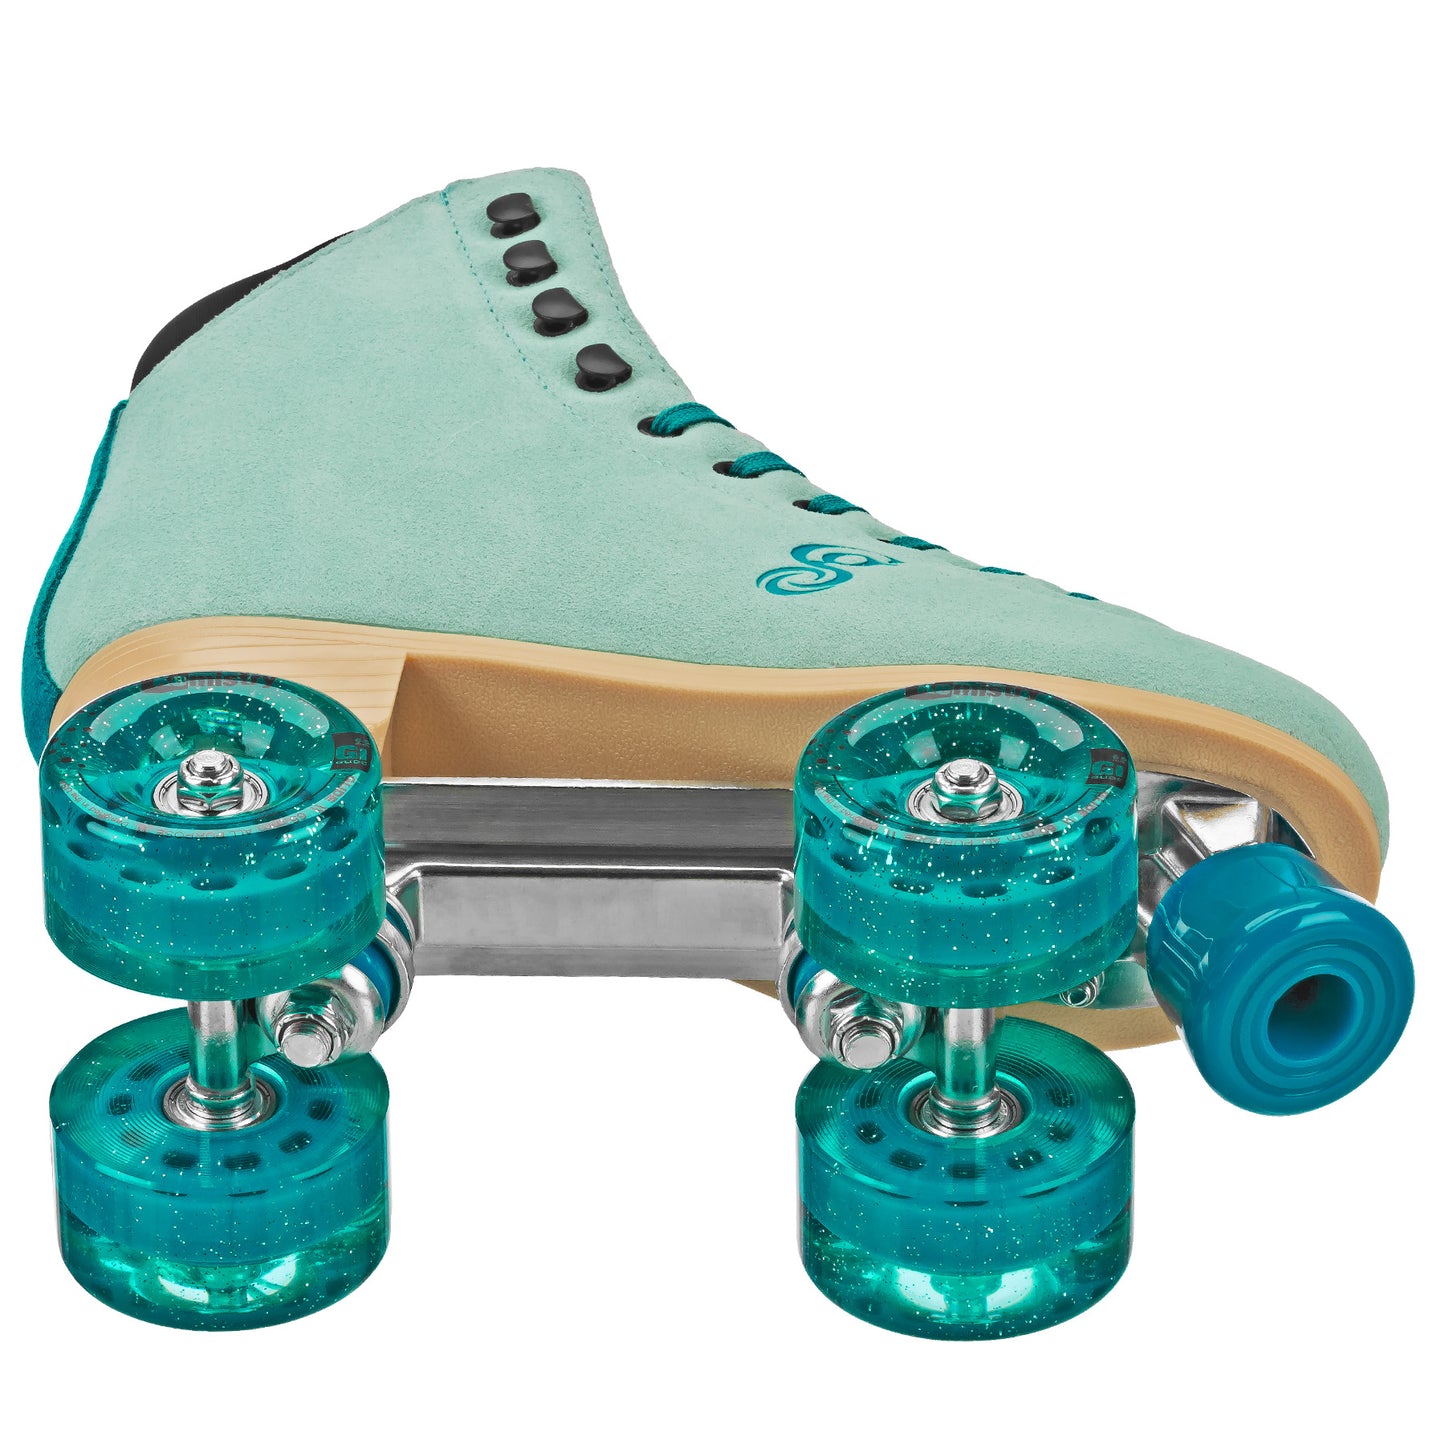 Candi Grl Carlin Quad Roller Skates